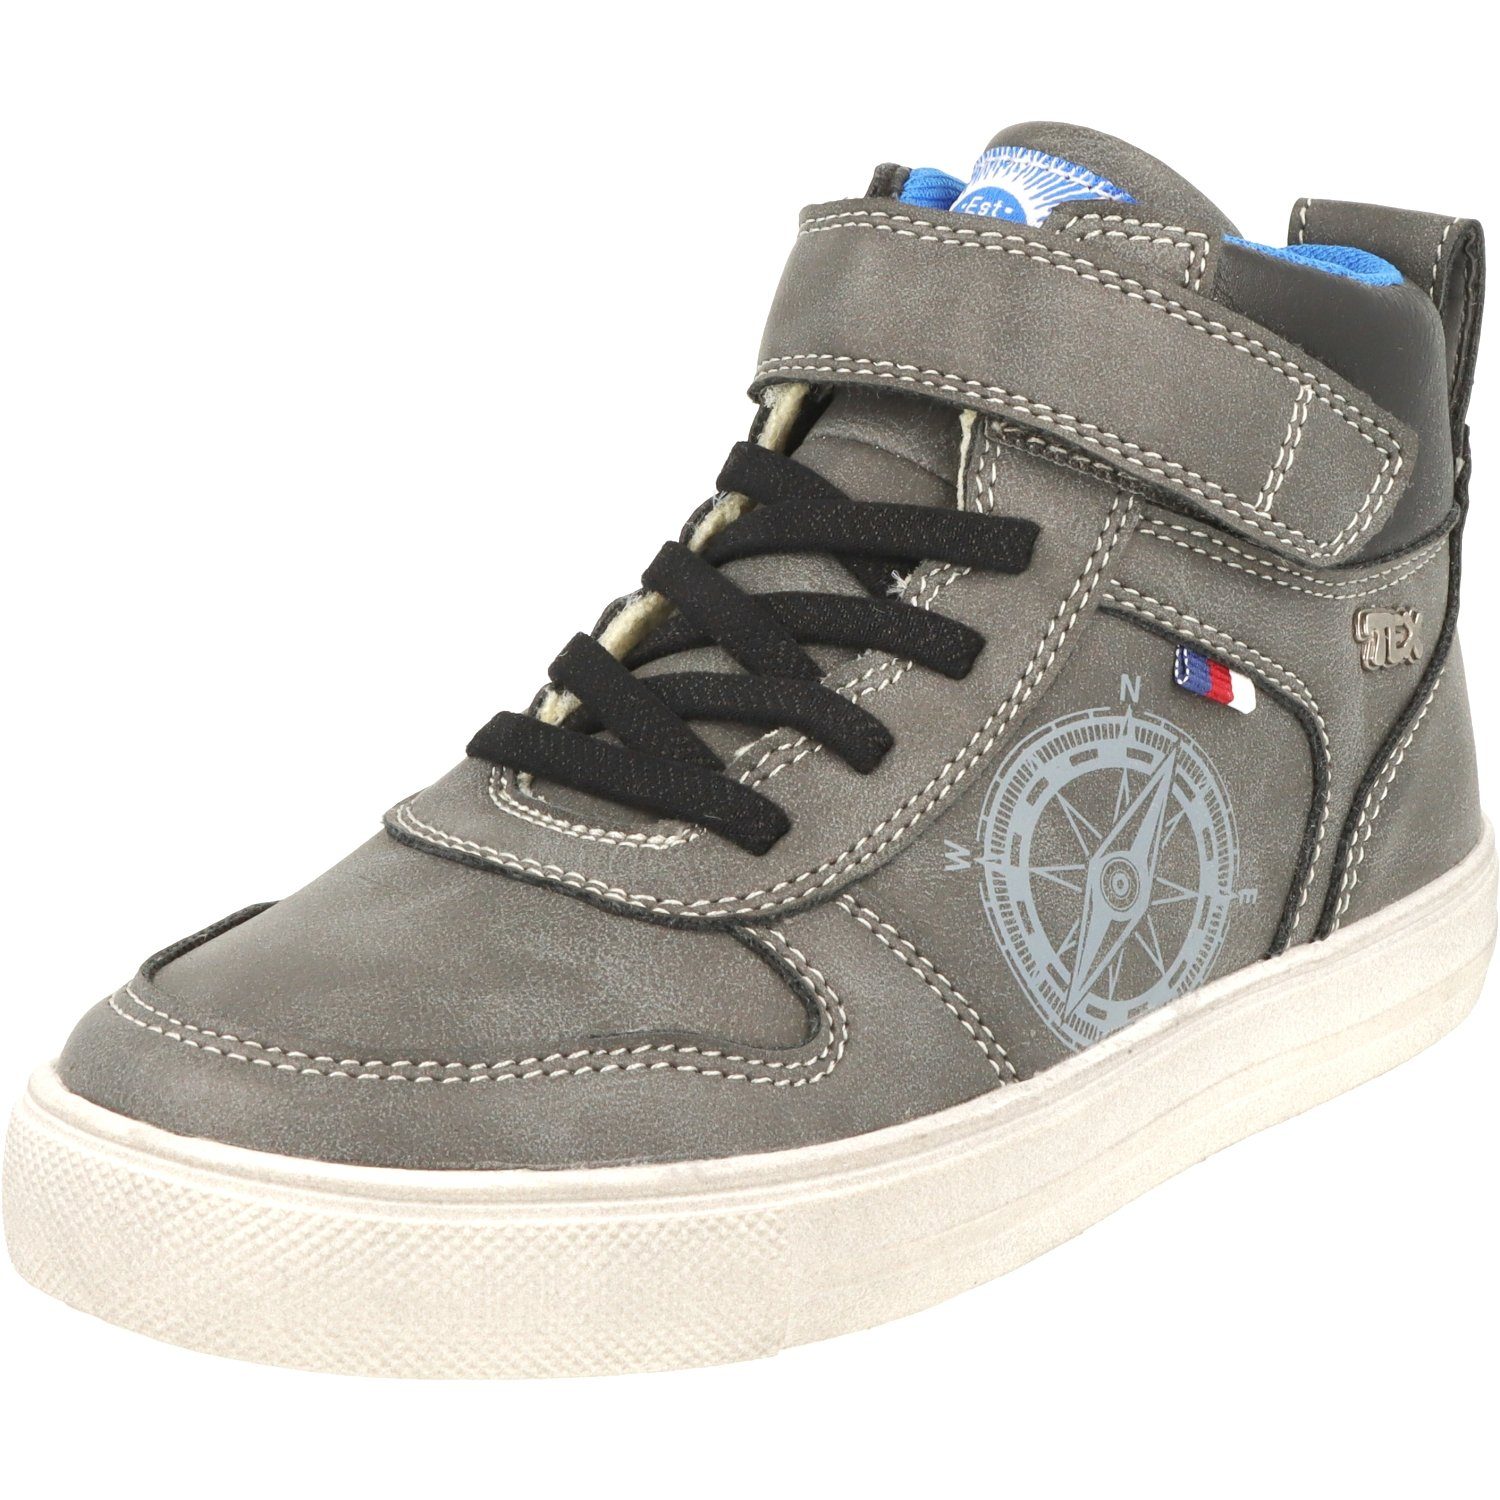 Indigo Jungen Schuhe 451-074 Schnürschuhe Hi-Top Sneaker Wasserabweisend Dk.Grey